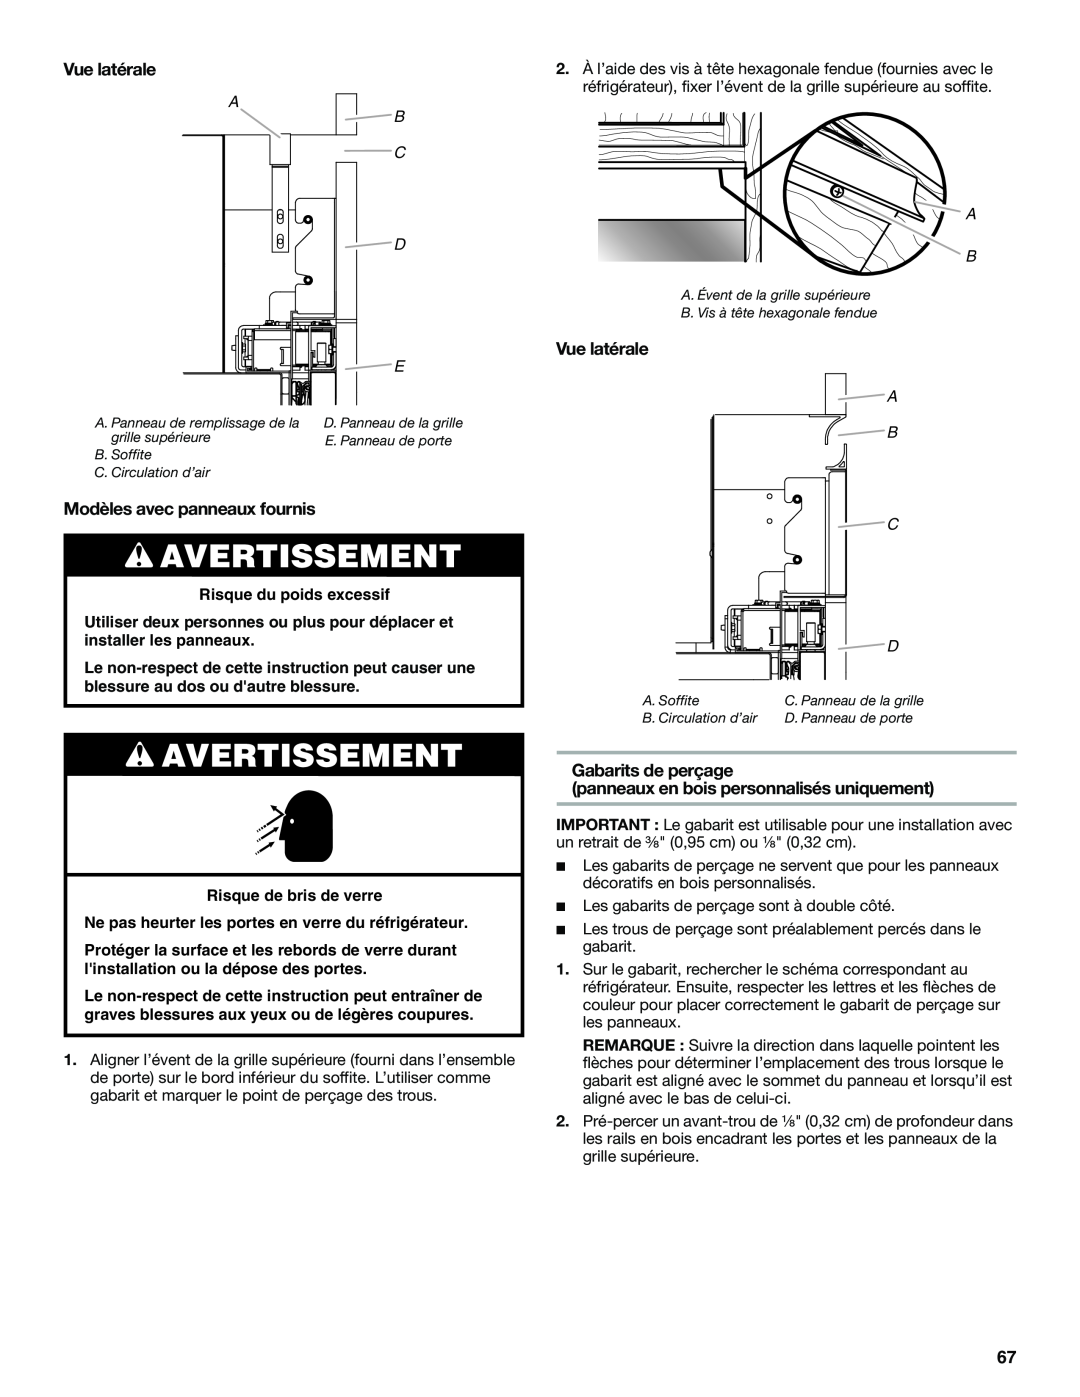 Jenn-Air W10379136B manual Vue latérale, Modèles avec panneaux fournis, Gabarits de perçage, Avertissement 